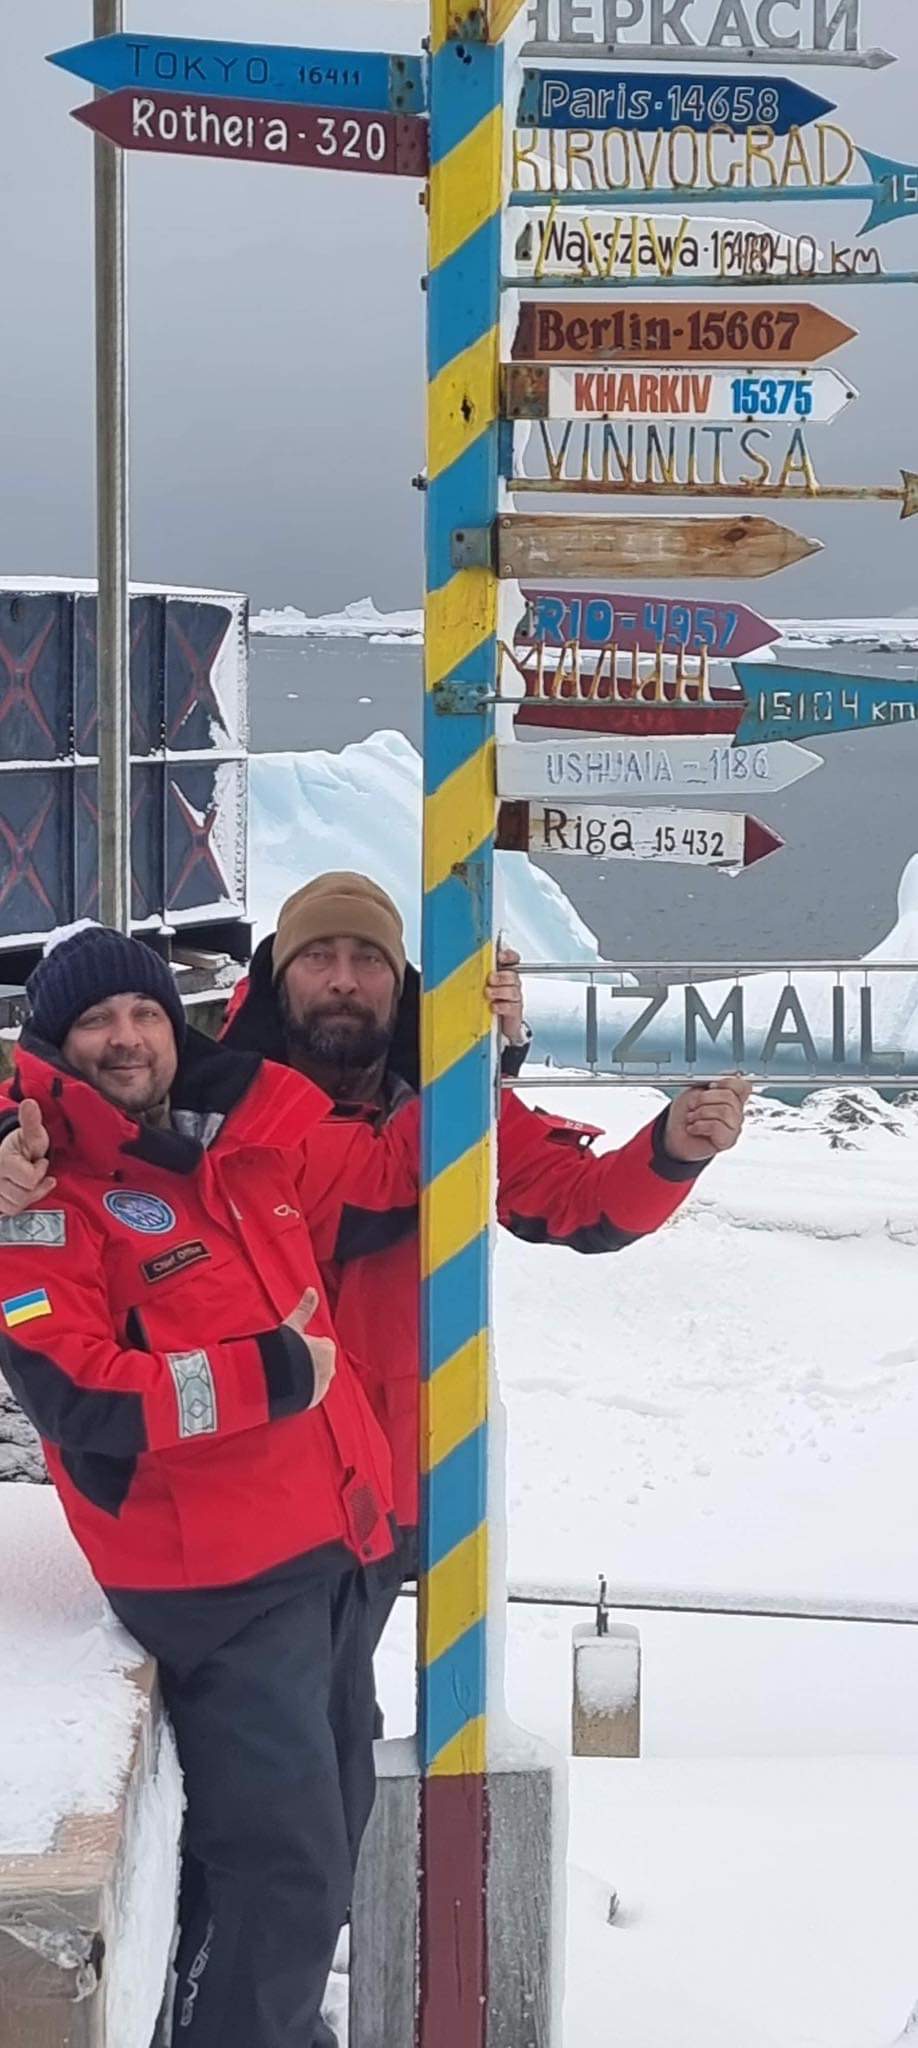 В Антарктике установили указатель на Измаил